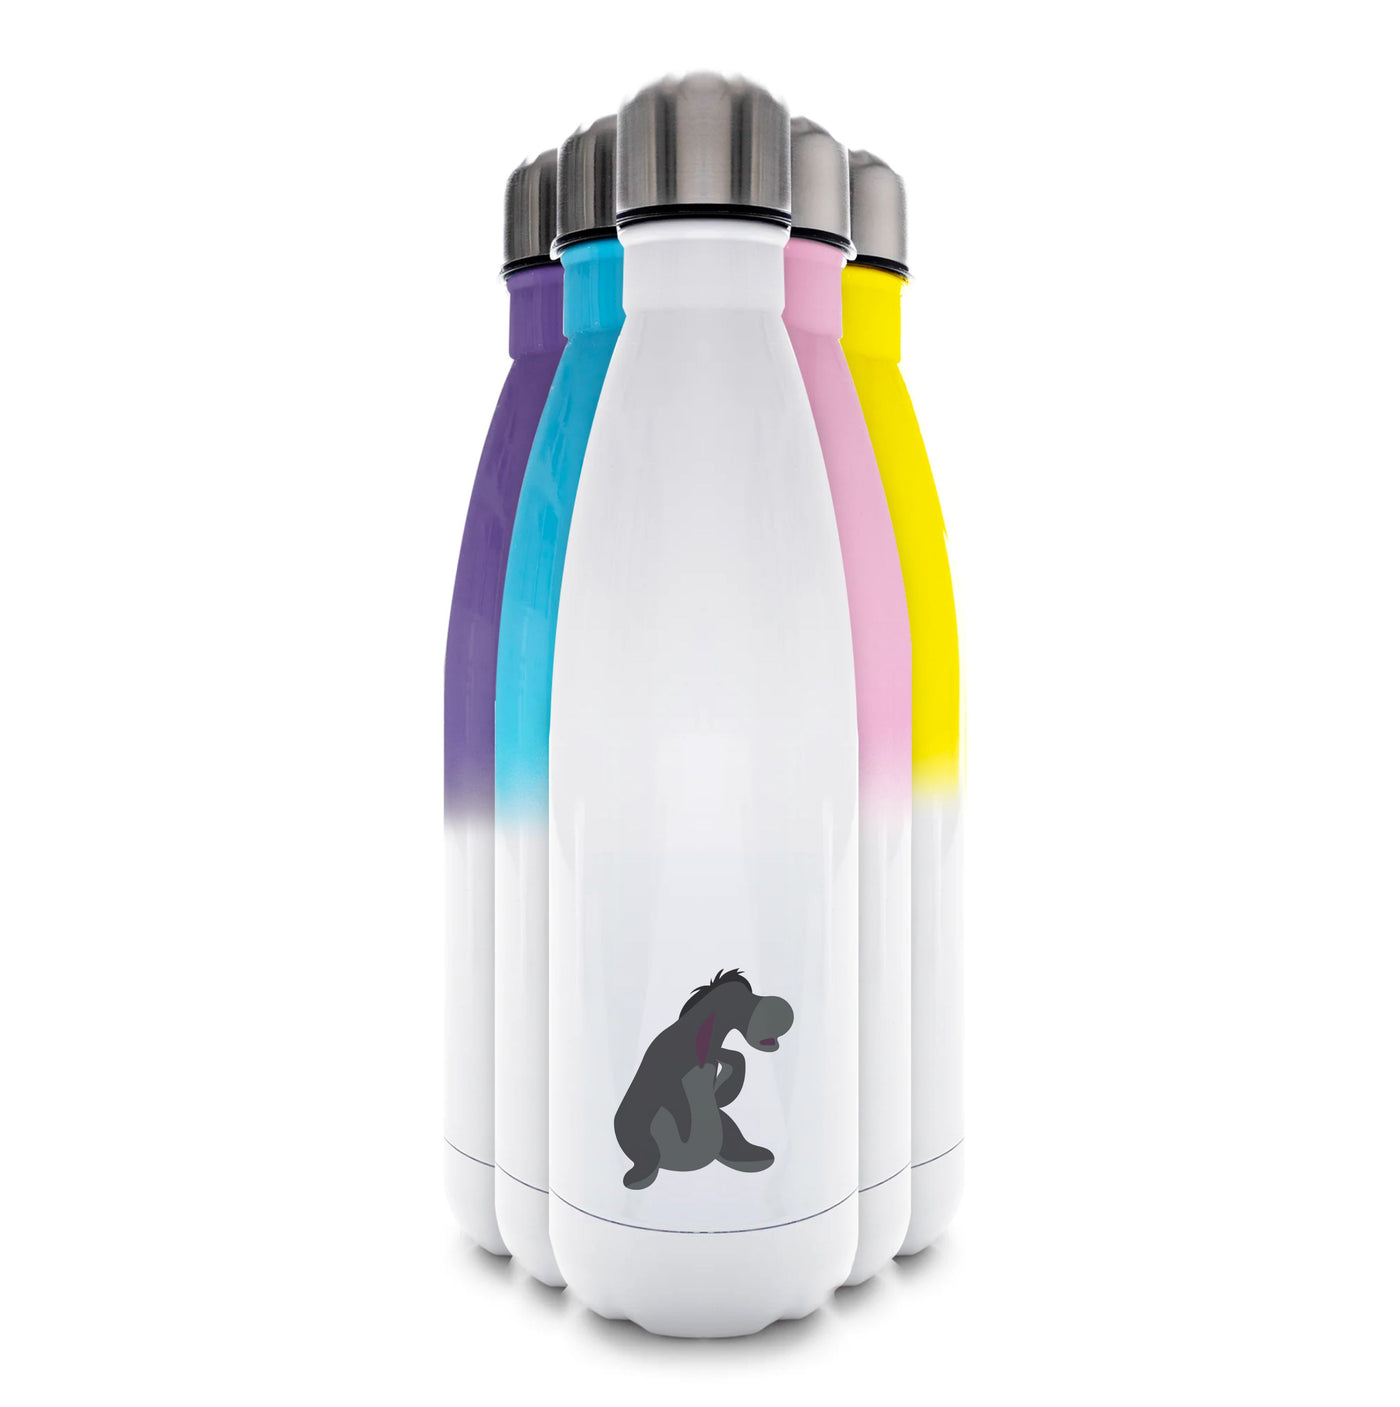 Eeyore - Winnie The Pooh Water Bottle